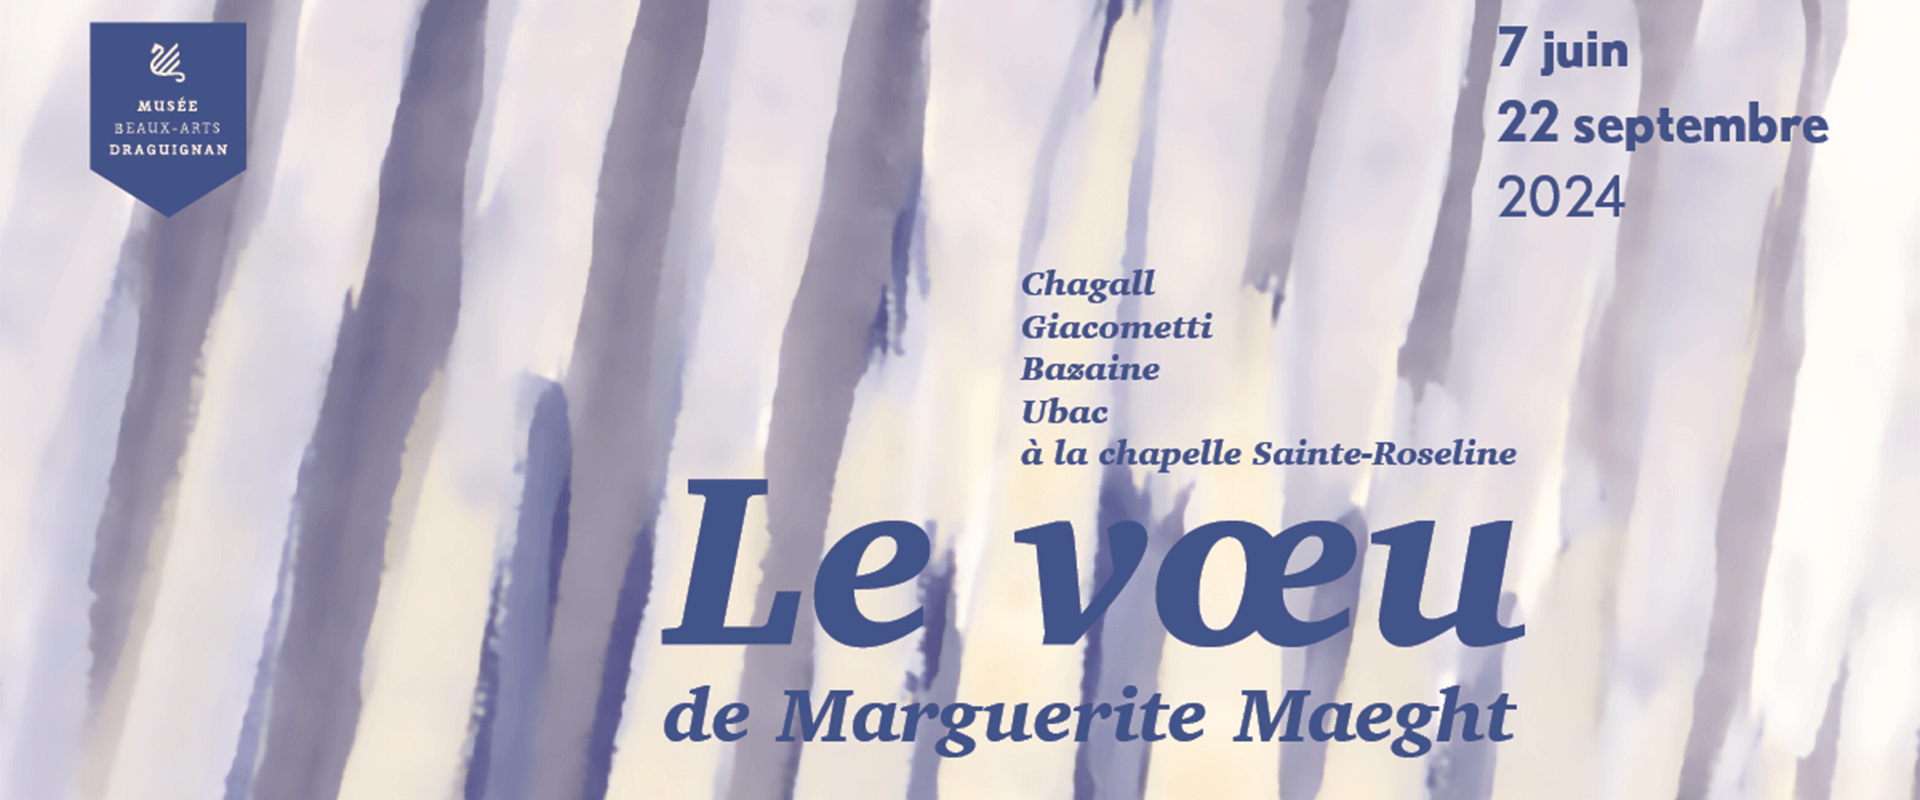 vignette-maeght-slide-juin-2024-draguignan